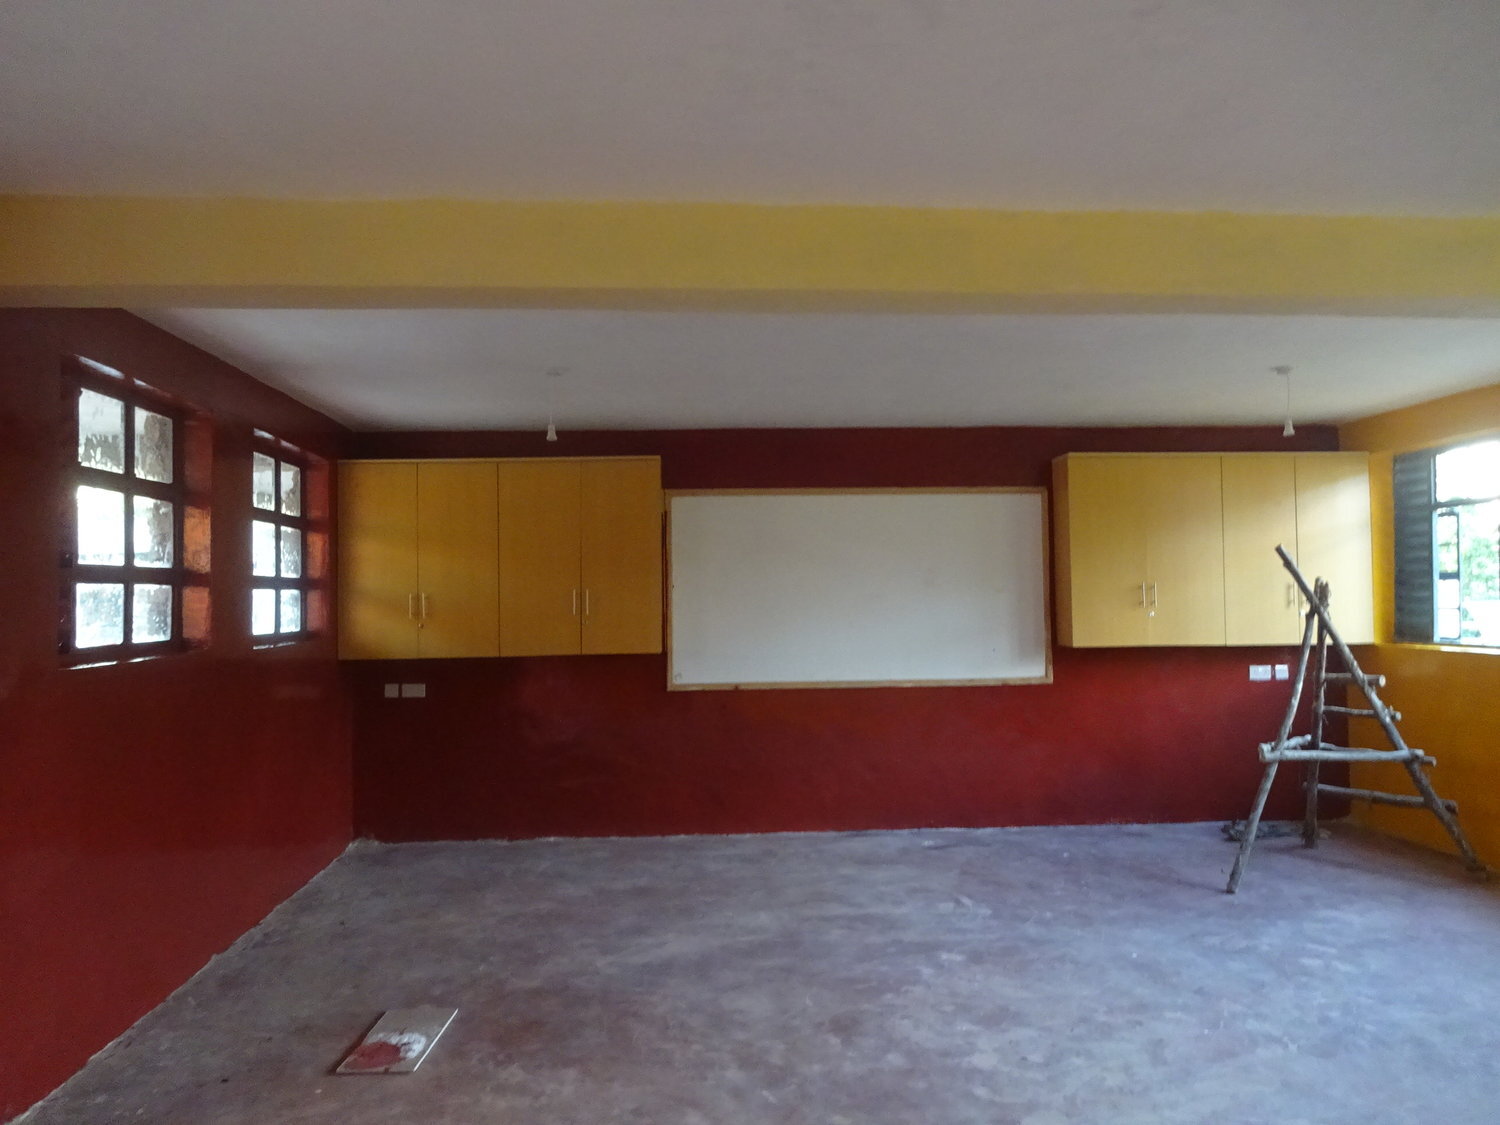 Beautiful new classrooms at Mwanzo Preparatory Academy